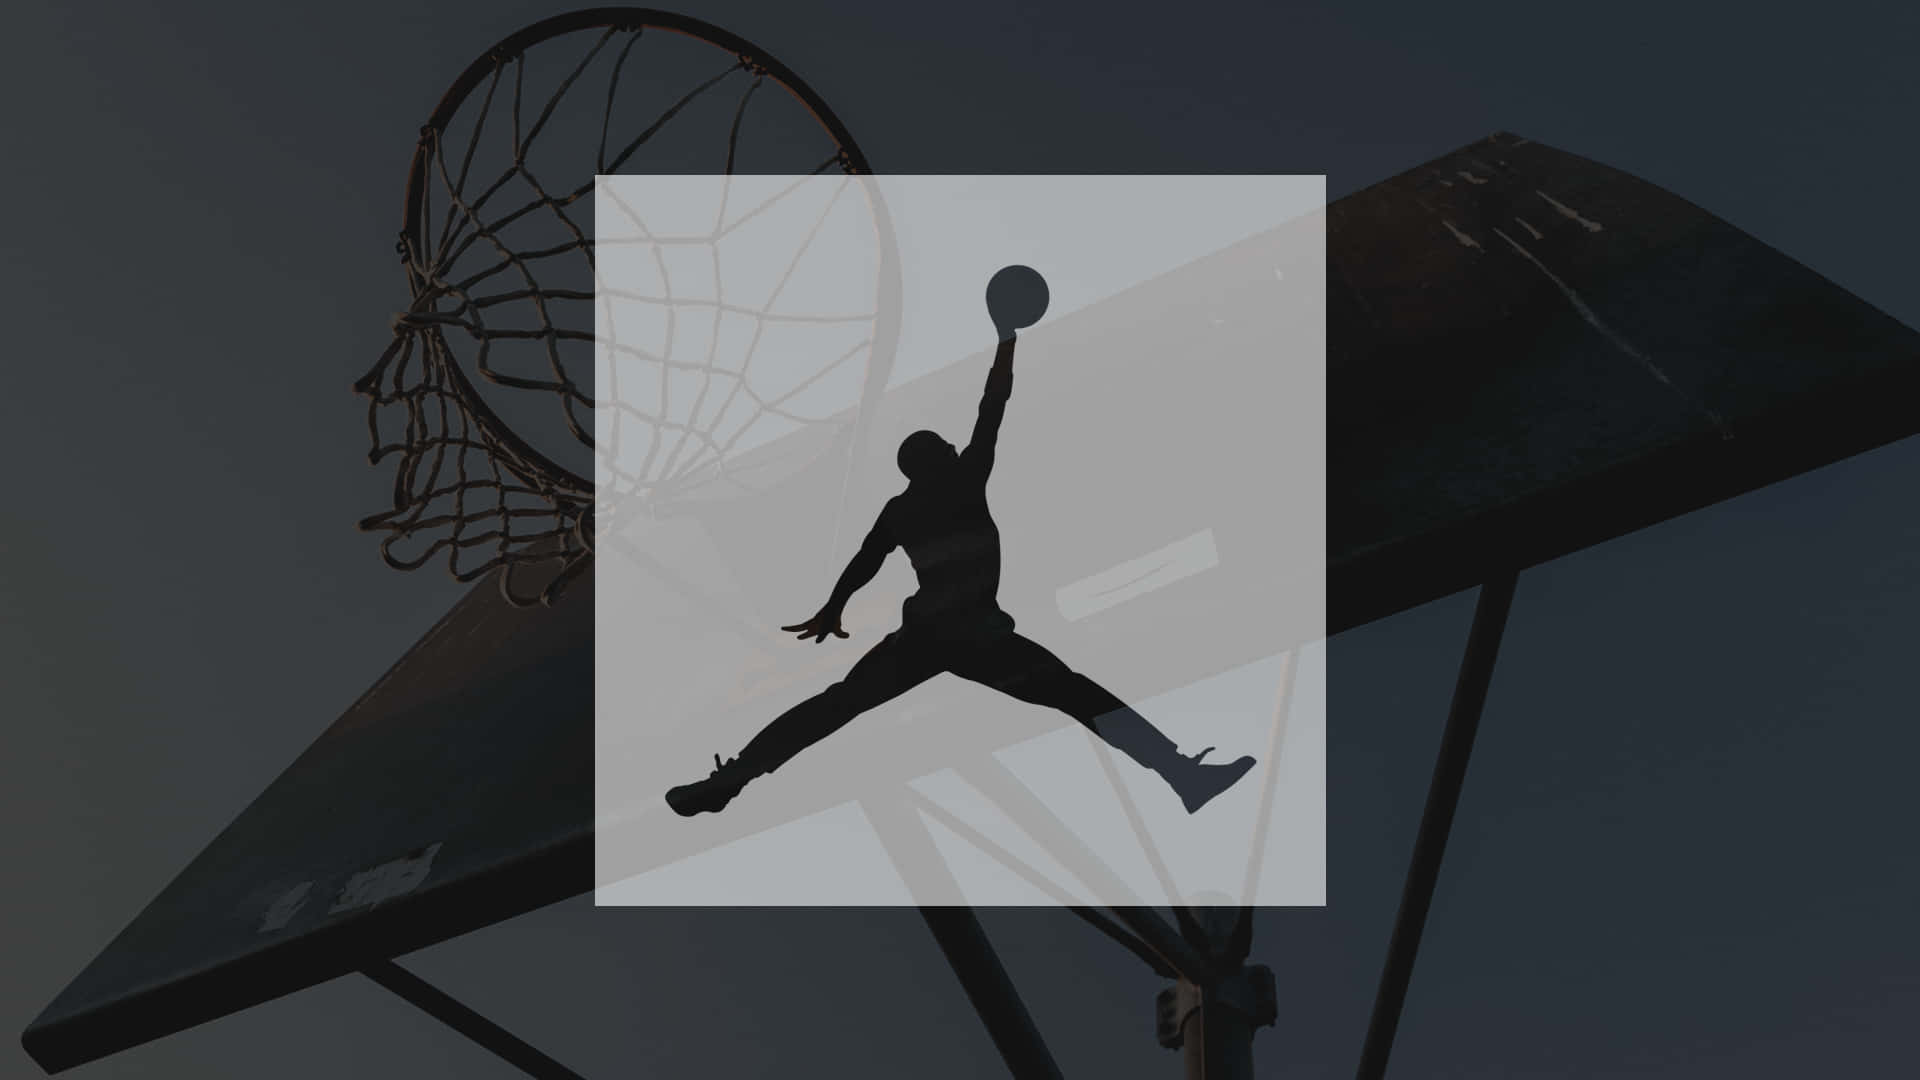 Einbasketballspieler Springt In Einen Korb. Wallpaper